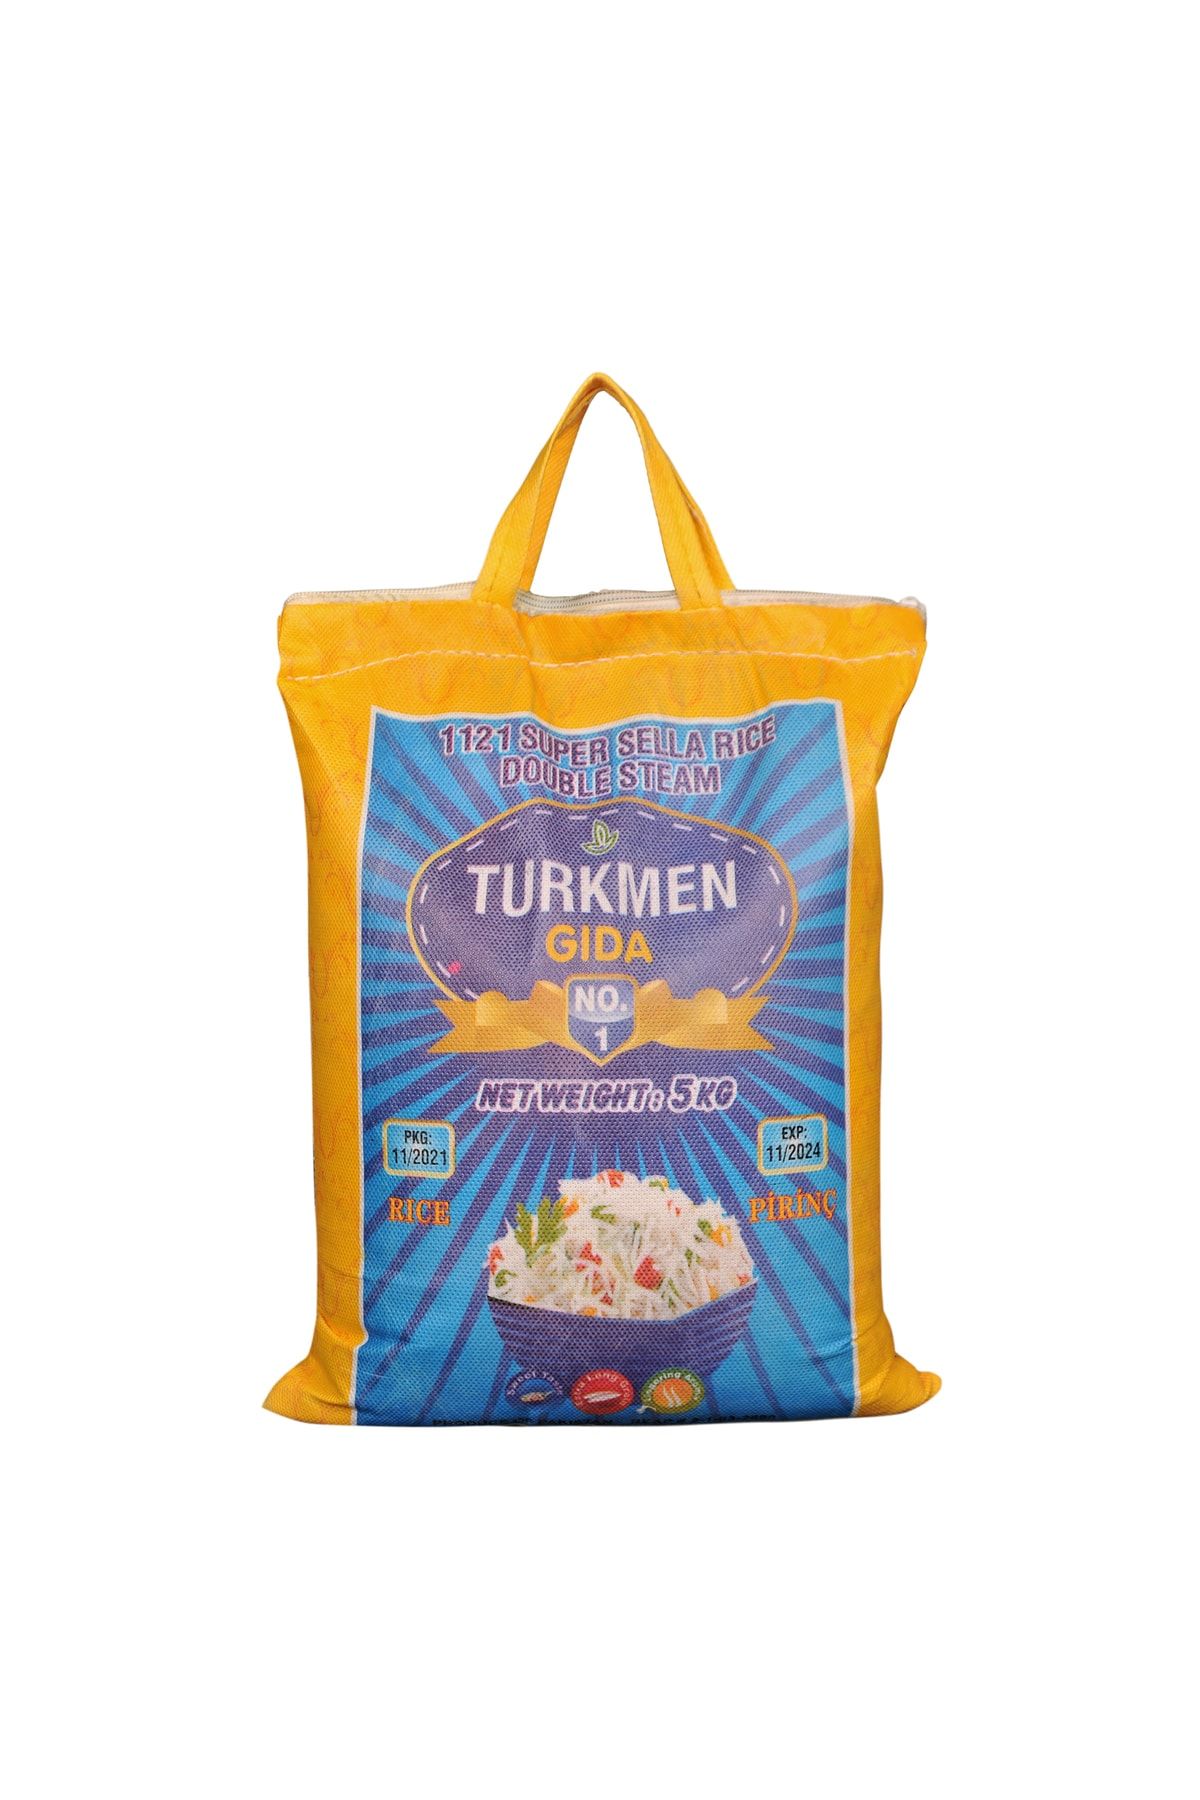 Türkmen 1121 Süper Golden Sella Rıce.pakistan Biryani Pirinci. 5 Kg.